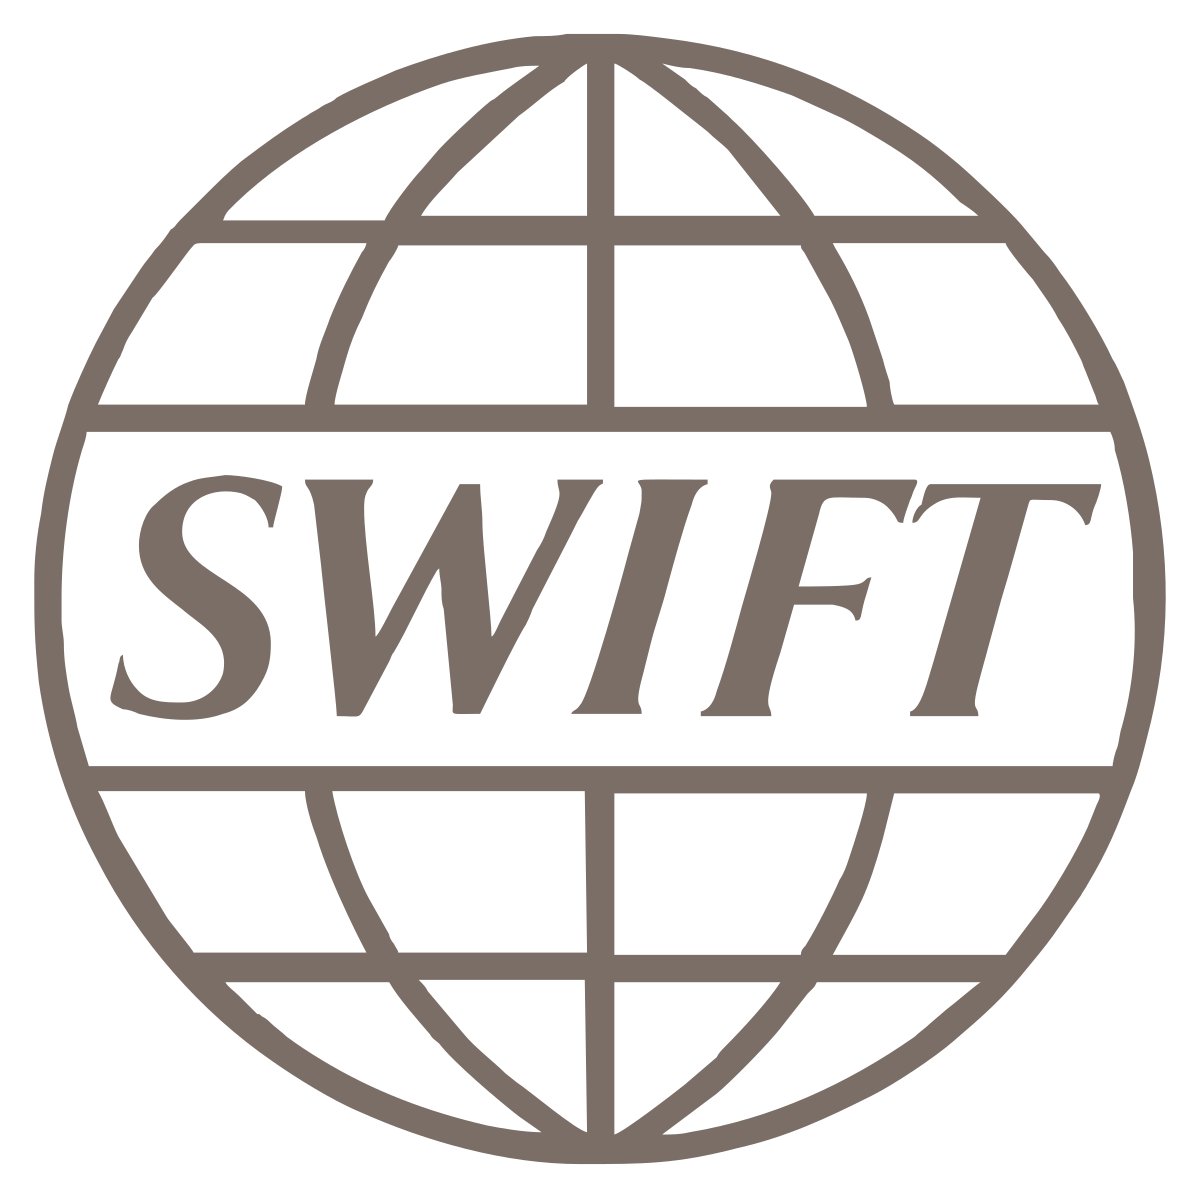 SWIFT ist ein „Facebook für internationale Banken“, bei dem statt Likes Dollar verschickt werden.  Ihn abzuschneiden mag Putins Regime zerstören, aber es wird Inflation in den Westen bringen, die Notwendigkeit, den Green Deal aufzugeben, oder den Fall des Dollars.